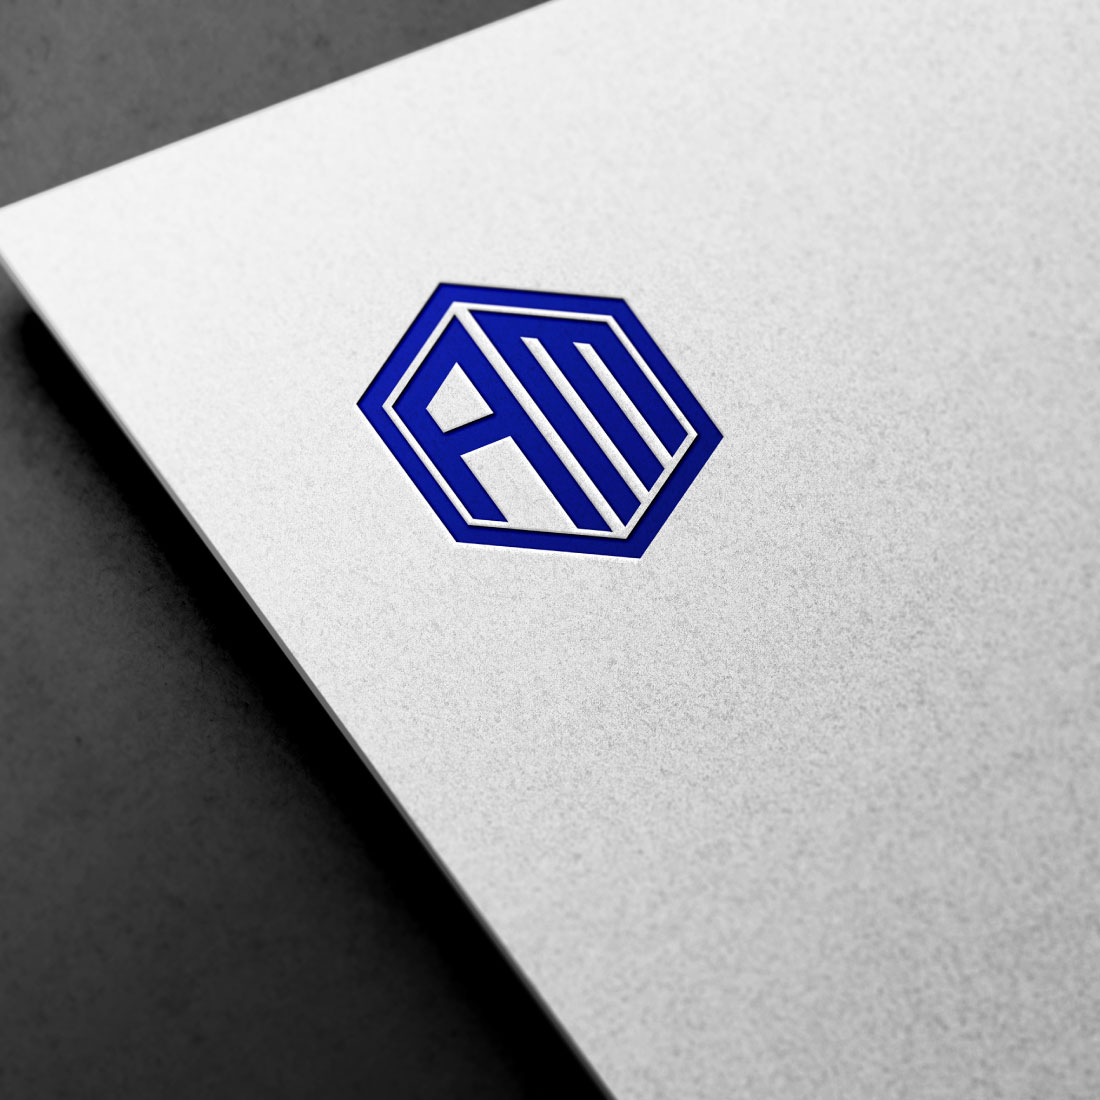 AM Logo Design preview image.